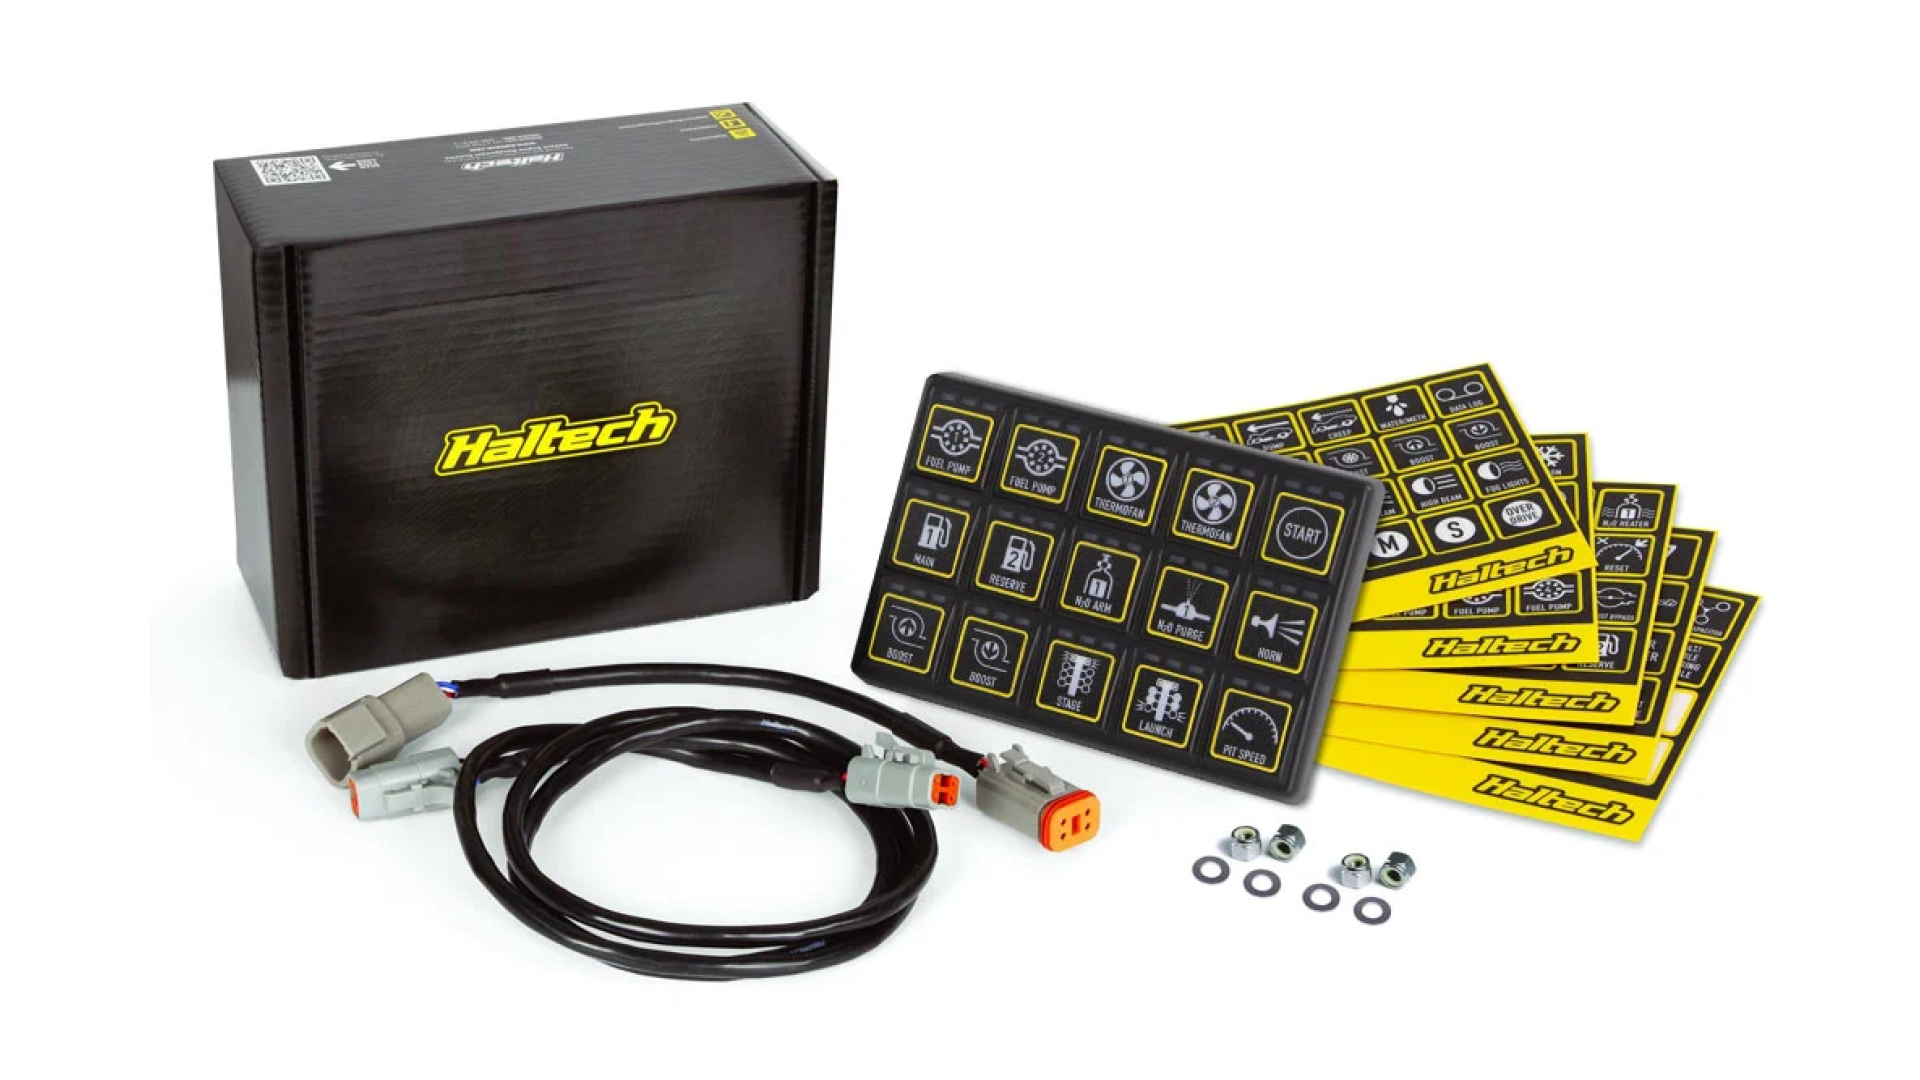 Haltech CAN keyboard 15 buttons (3x5), M6 thread